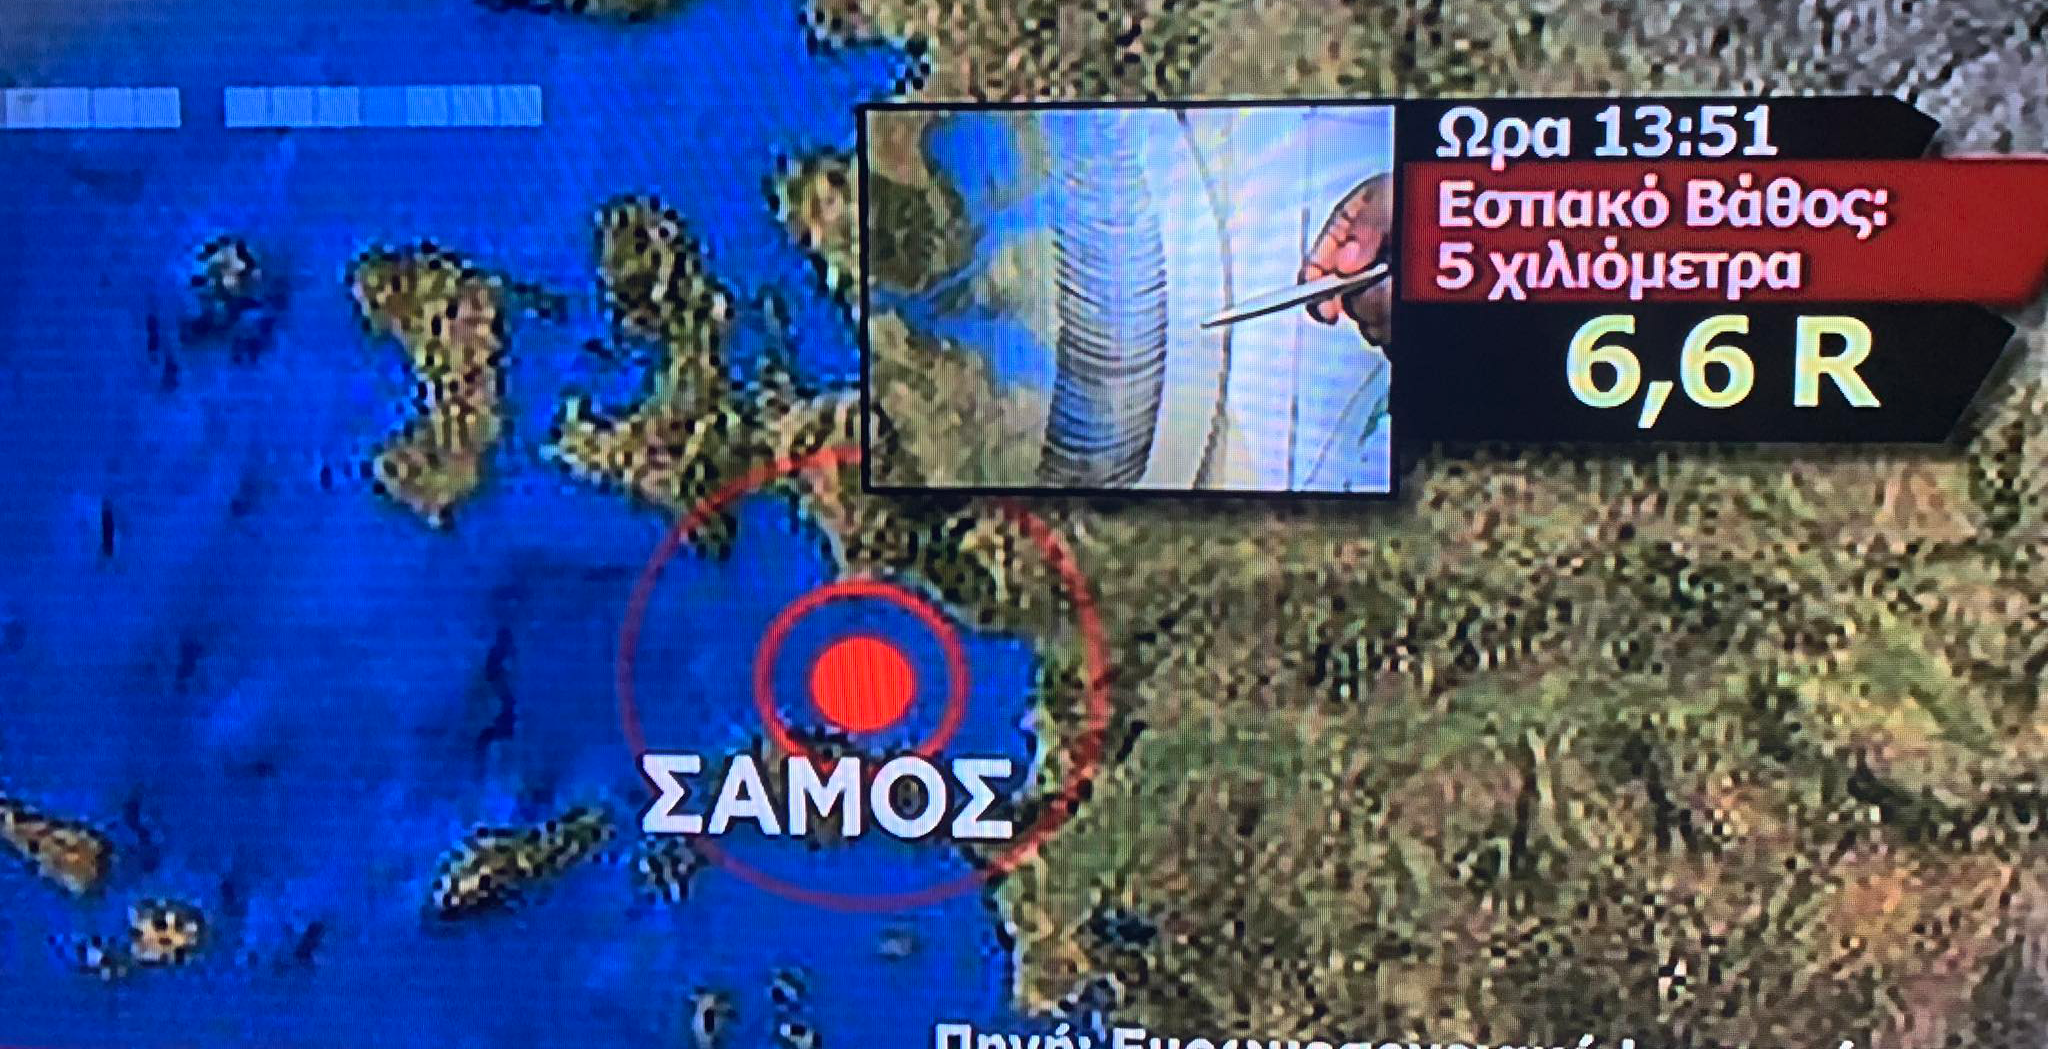 Ισχυρός σεισμός αισθητός στην Εύβοια-Στη Σάμο το επίκεντρο  6,6 Ρίχτερ